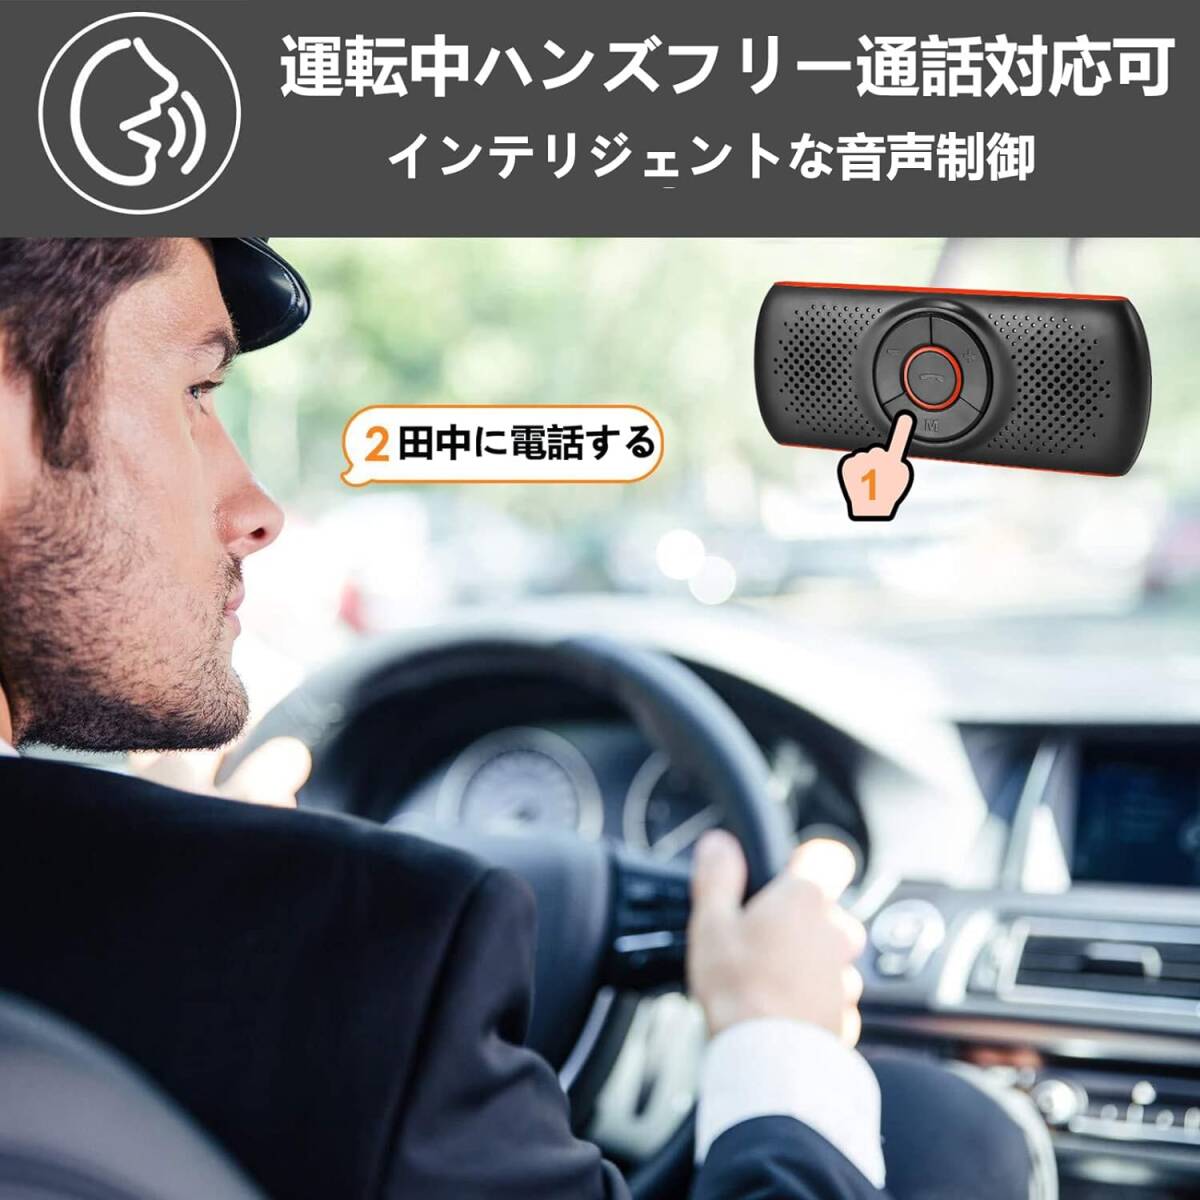 トレンド 車載用Bluetoothスピーカー、ワイヤレス通話可能、音楽再生、ハン